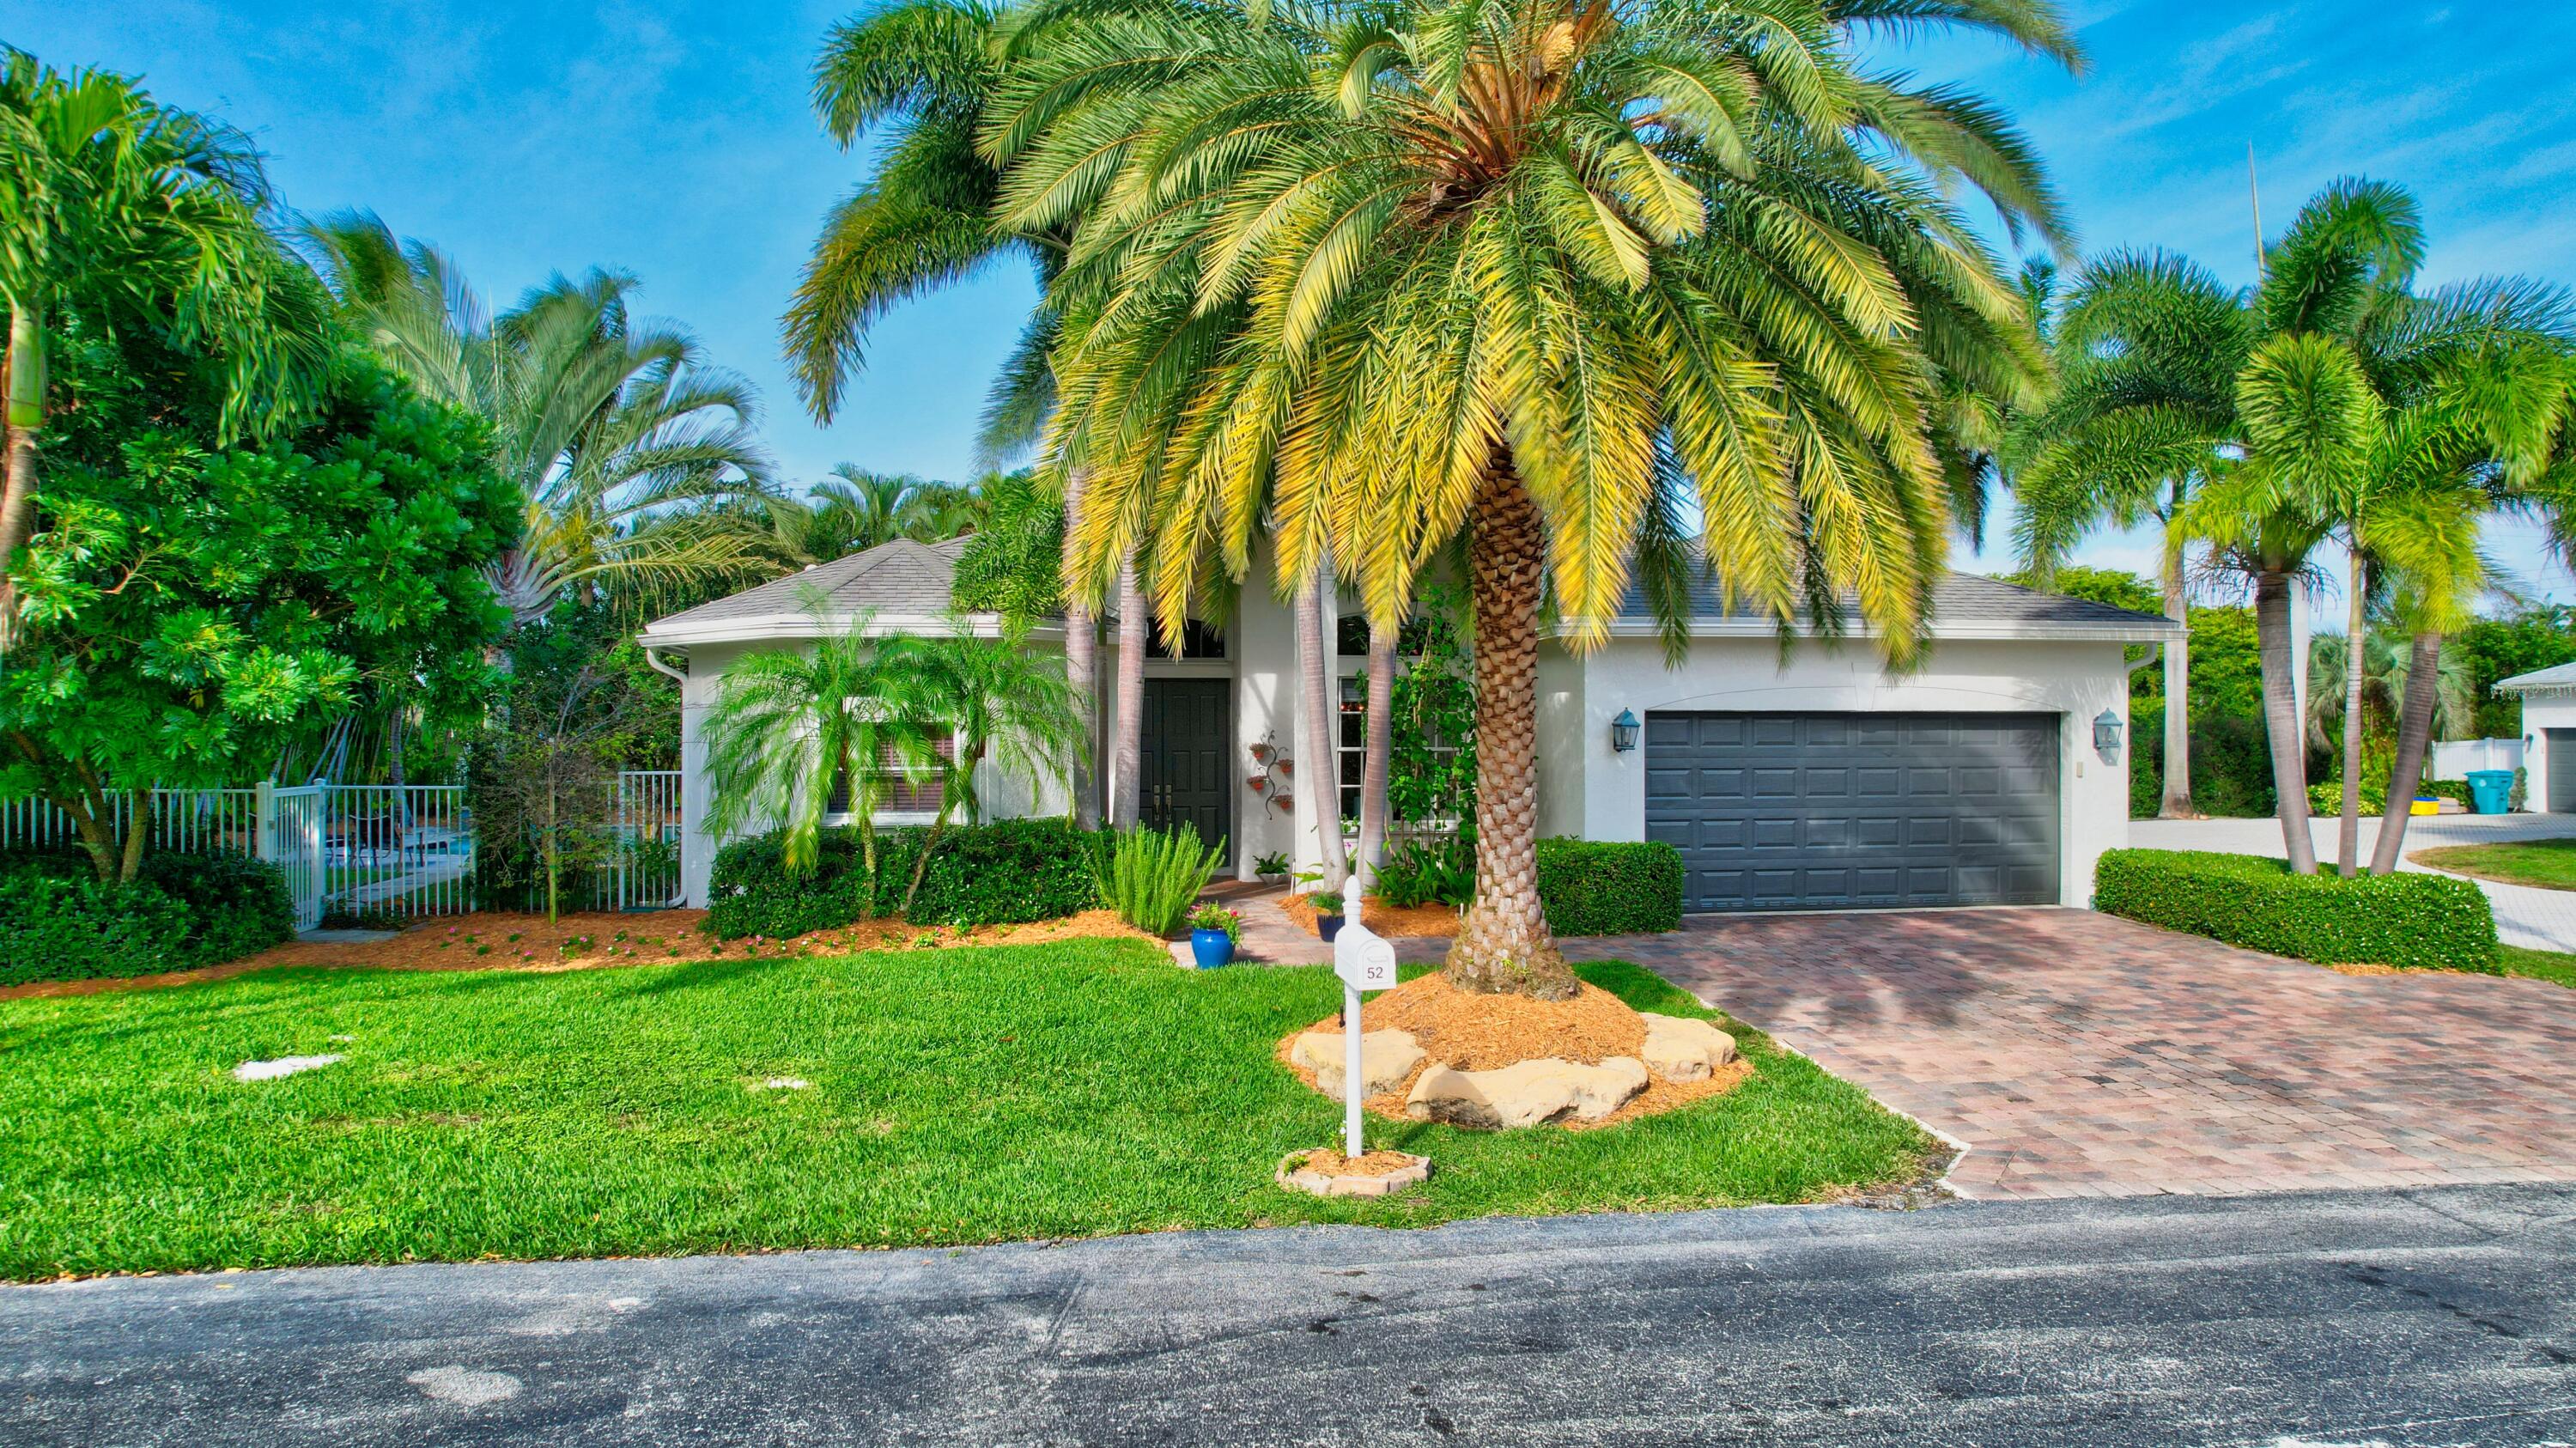 Property for Sale at 52 Lake Eden Drive, Boynton Beach, Palm Beach County, Florida - Bedrooms: 4 
Bathrooms: 3  - $1,160,000